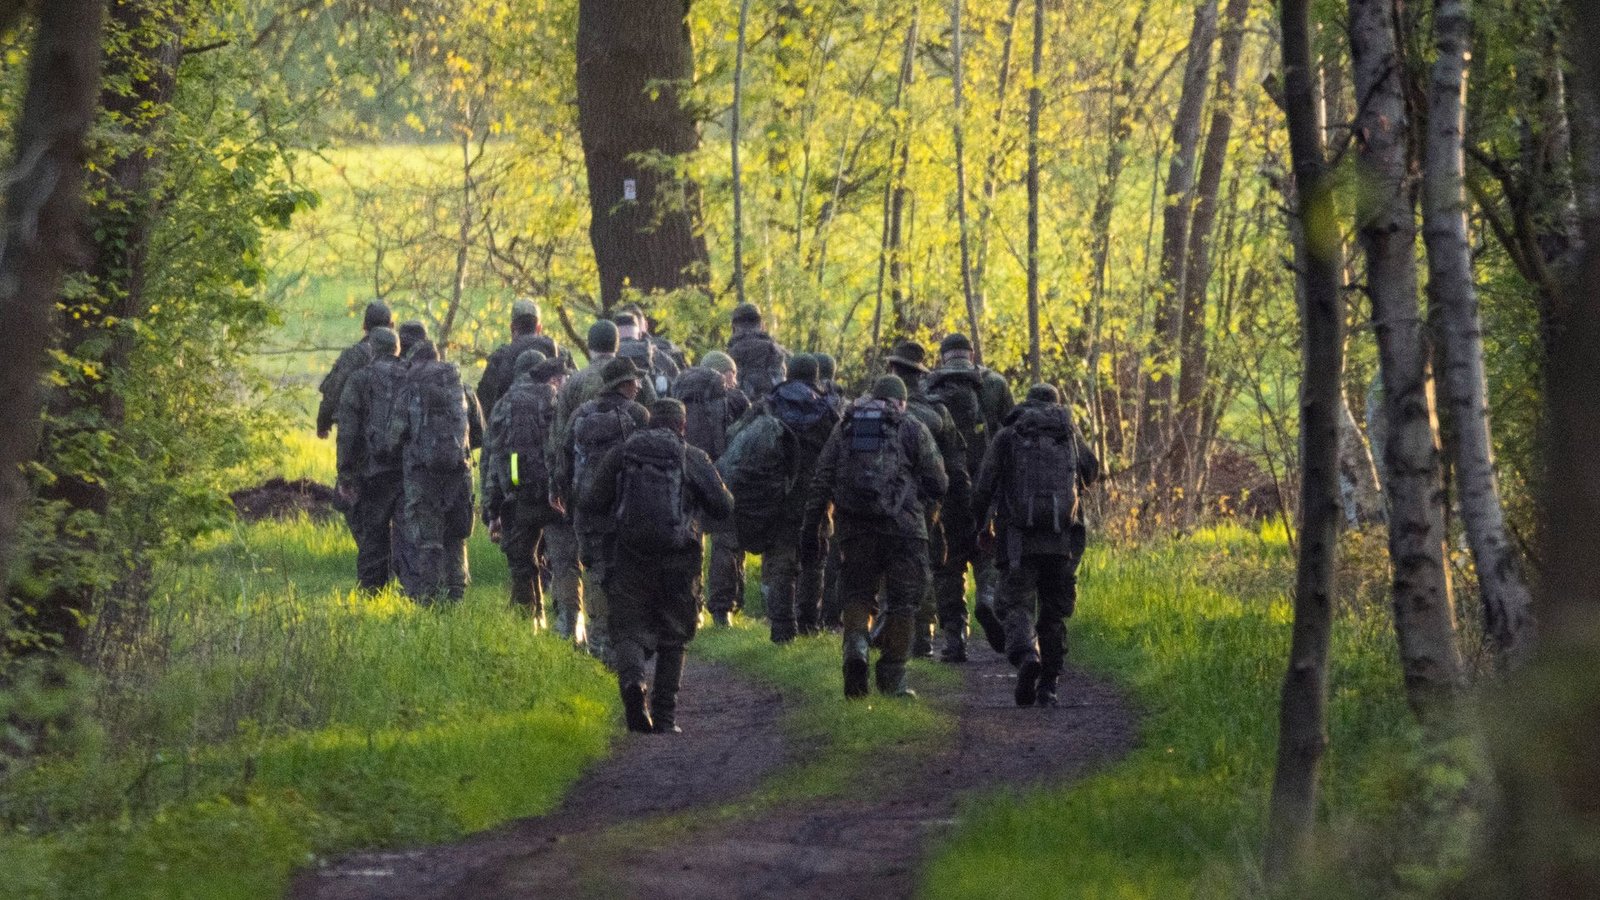 Die Bundeswehr sollte in der Nacht mit rund 200 Soldaten nach dem Jungen suchen.Foto: Markus Hibbeler/dpa